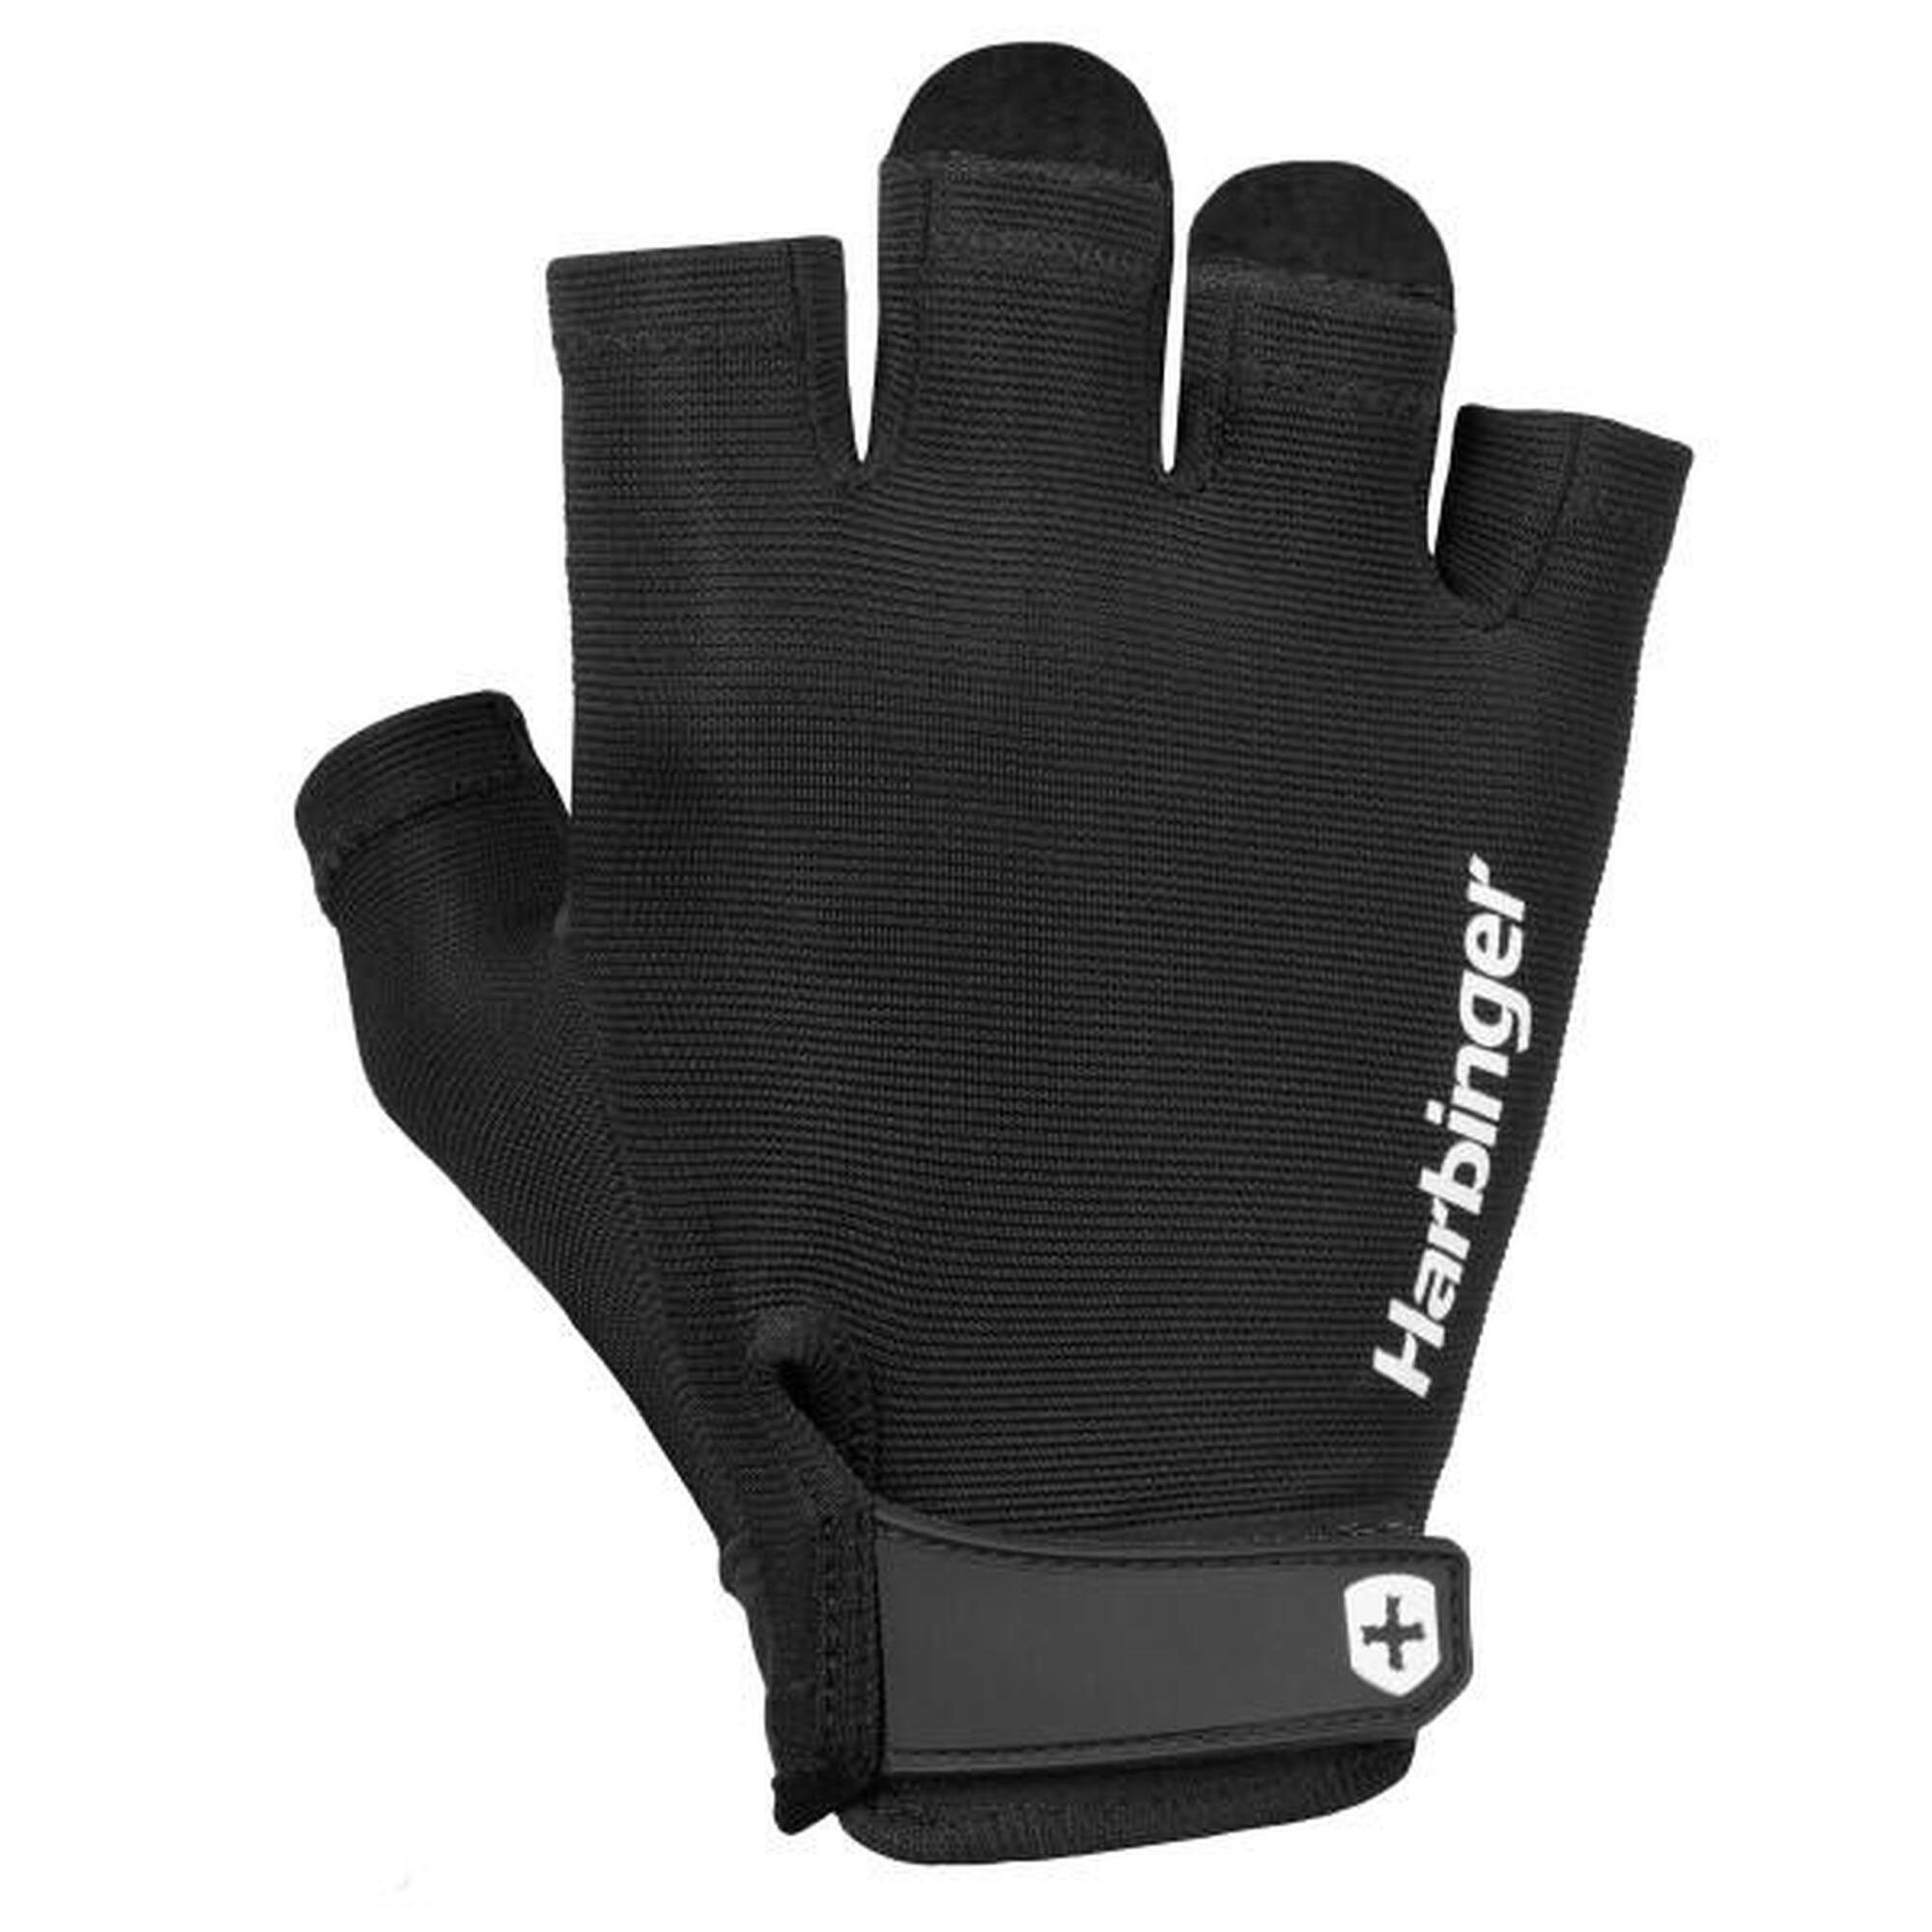 Harbinger Power Handschoenen: Stevige grip, optimaal comfort. Maat M - Zwart